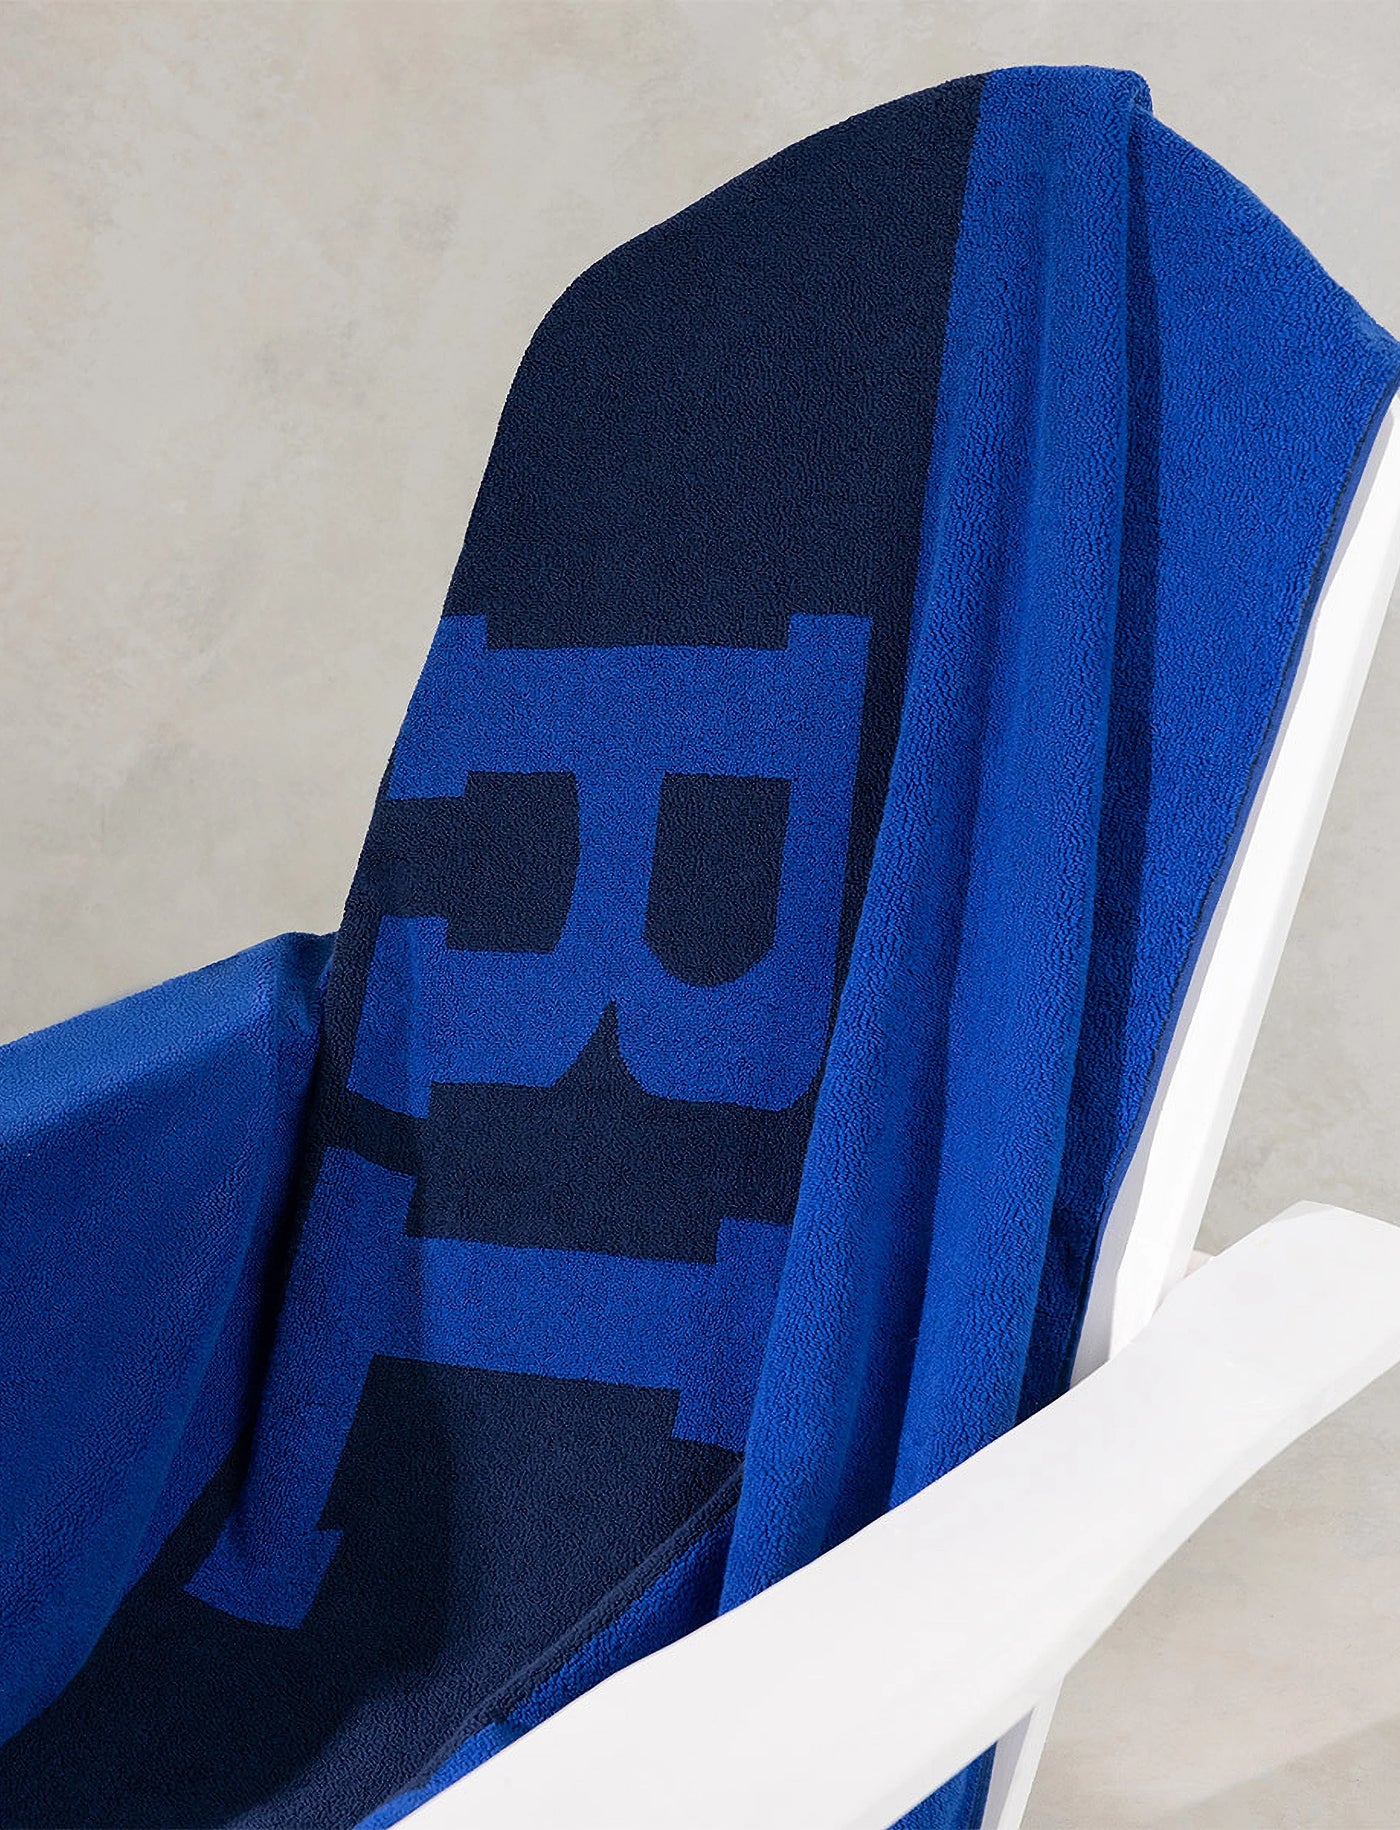 Ralph Lauren RL Signature Beach Towel 100x170cm | Blue/Navy